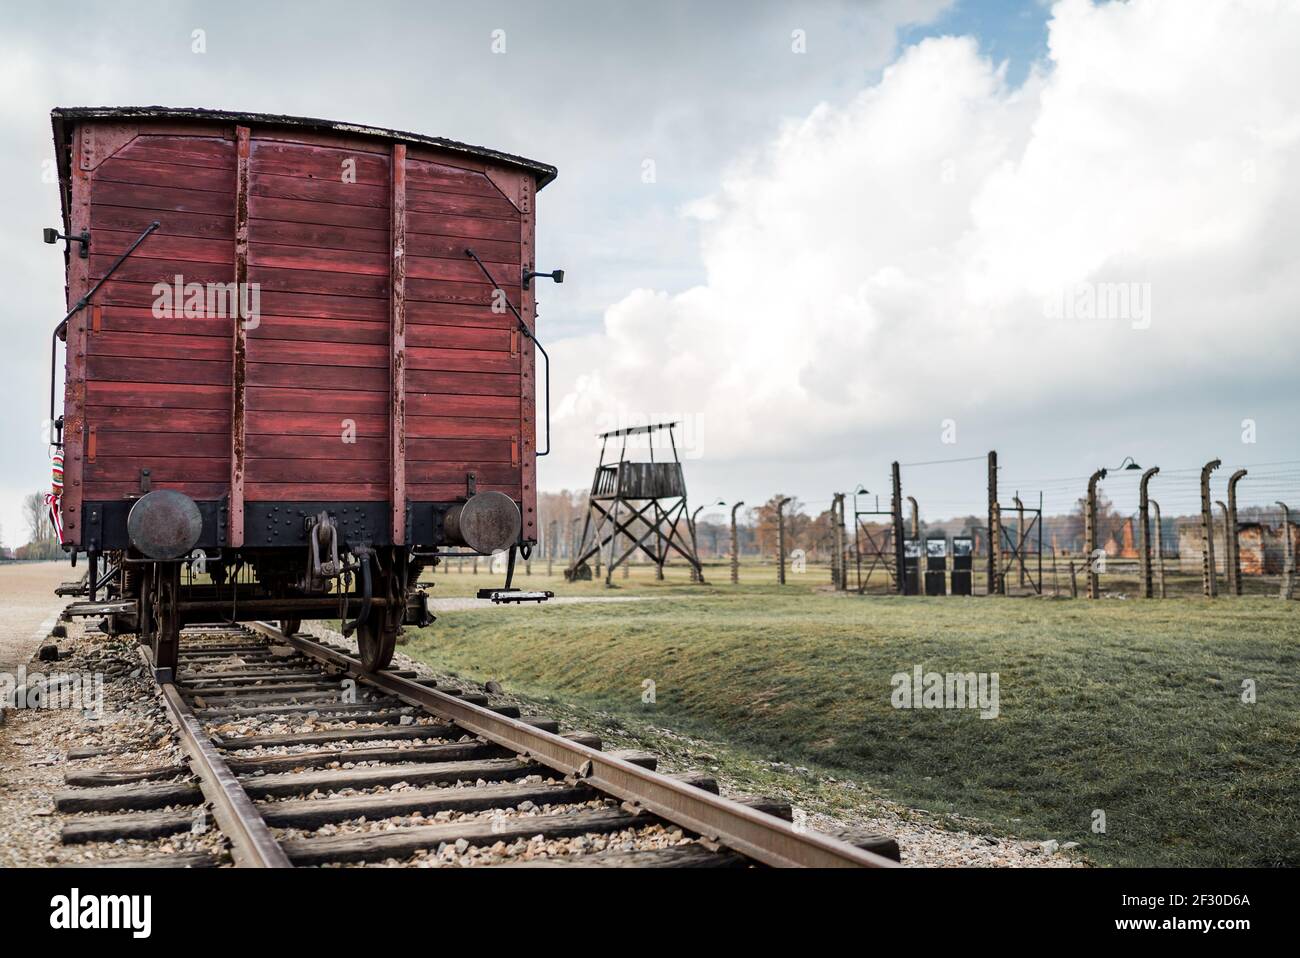 fema concentration camps trains